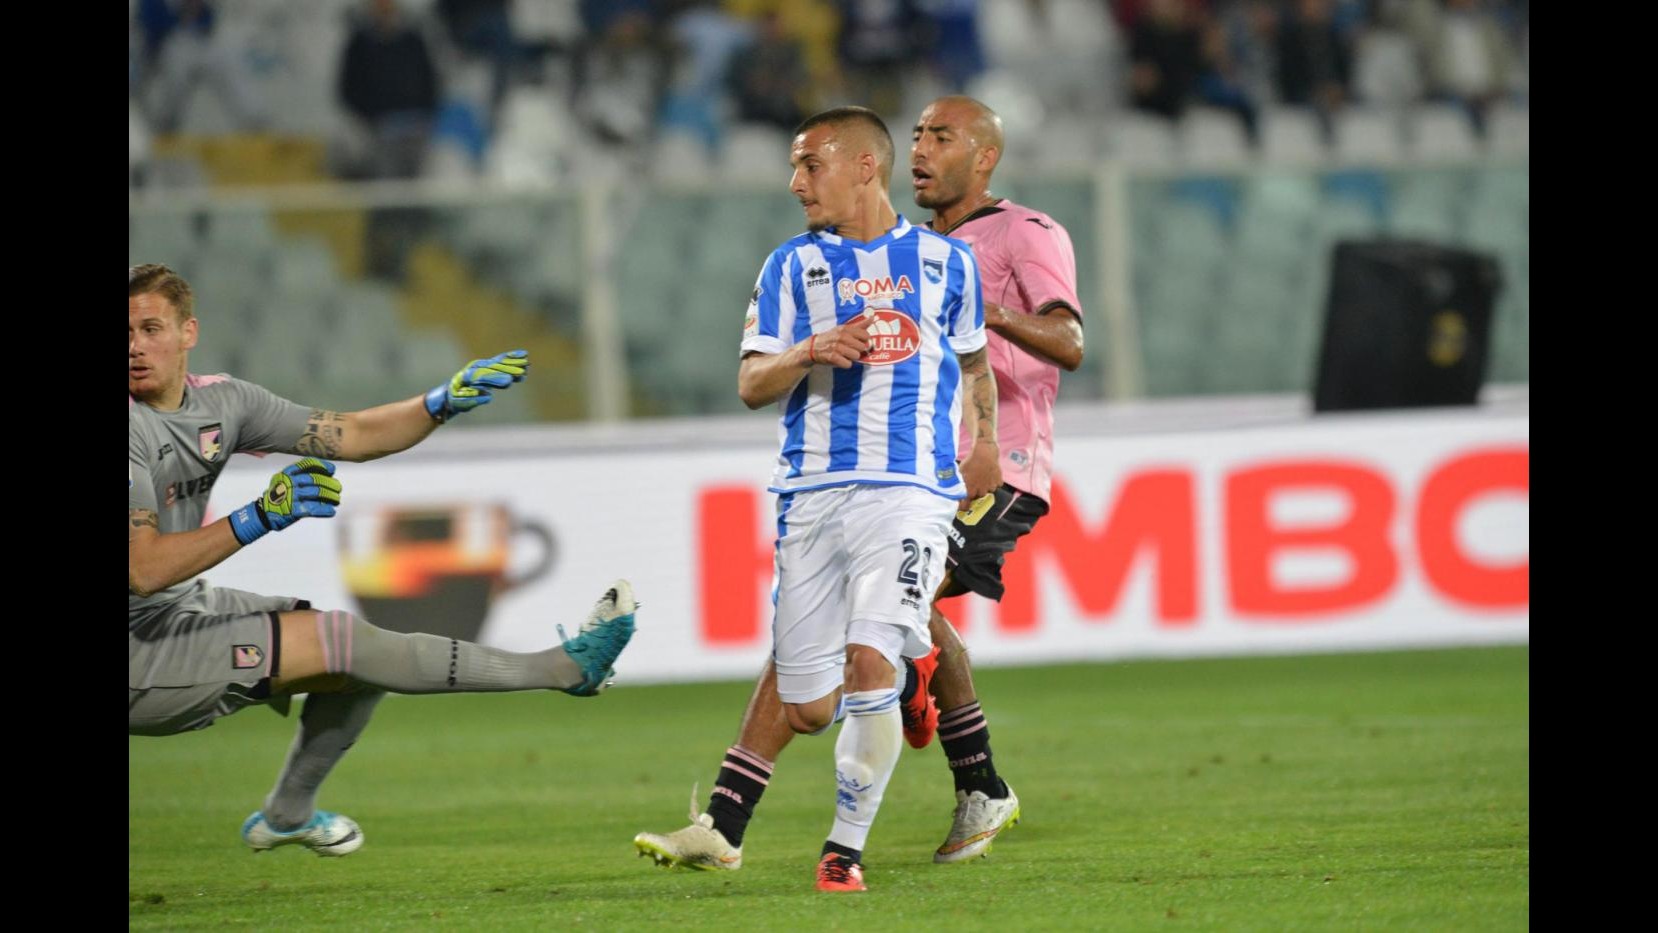 FOTO Serie A, Pescara batte Palermo 2-0 nella sfida tra deluse